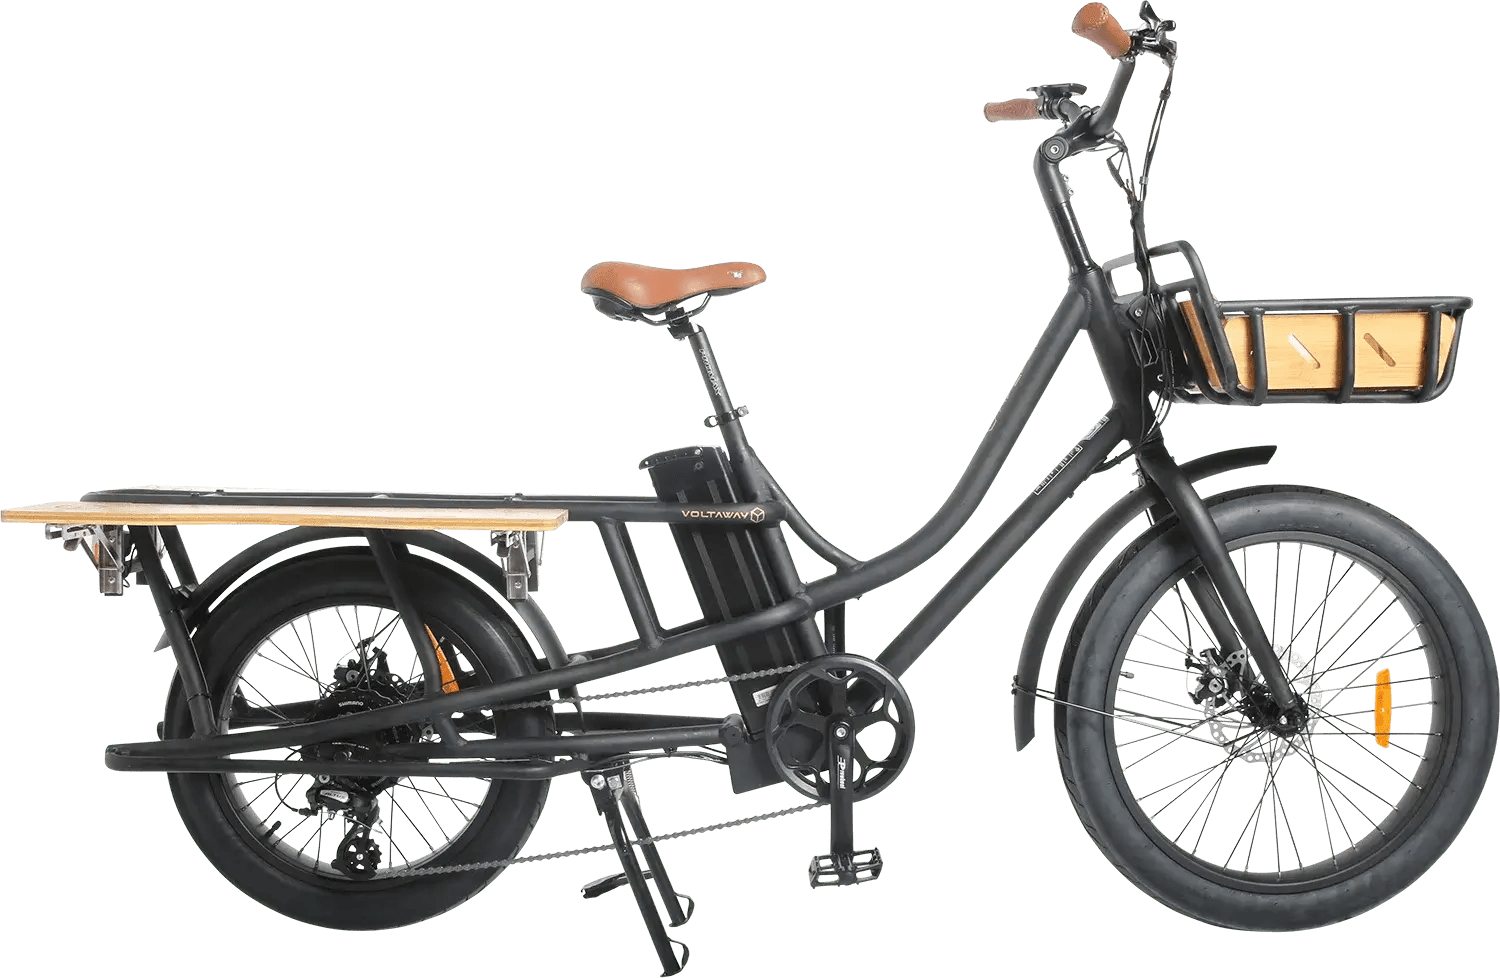 Ebike bremshebel legierung, bremshebel ebike power, bremshebel für  elektro fahrrad